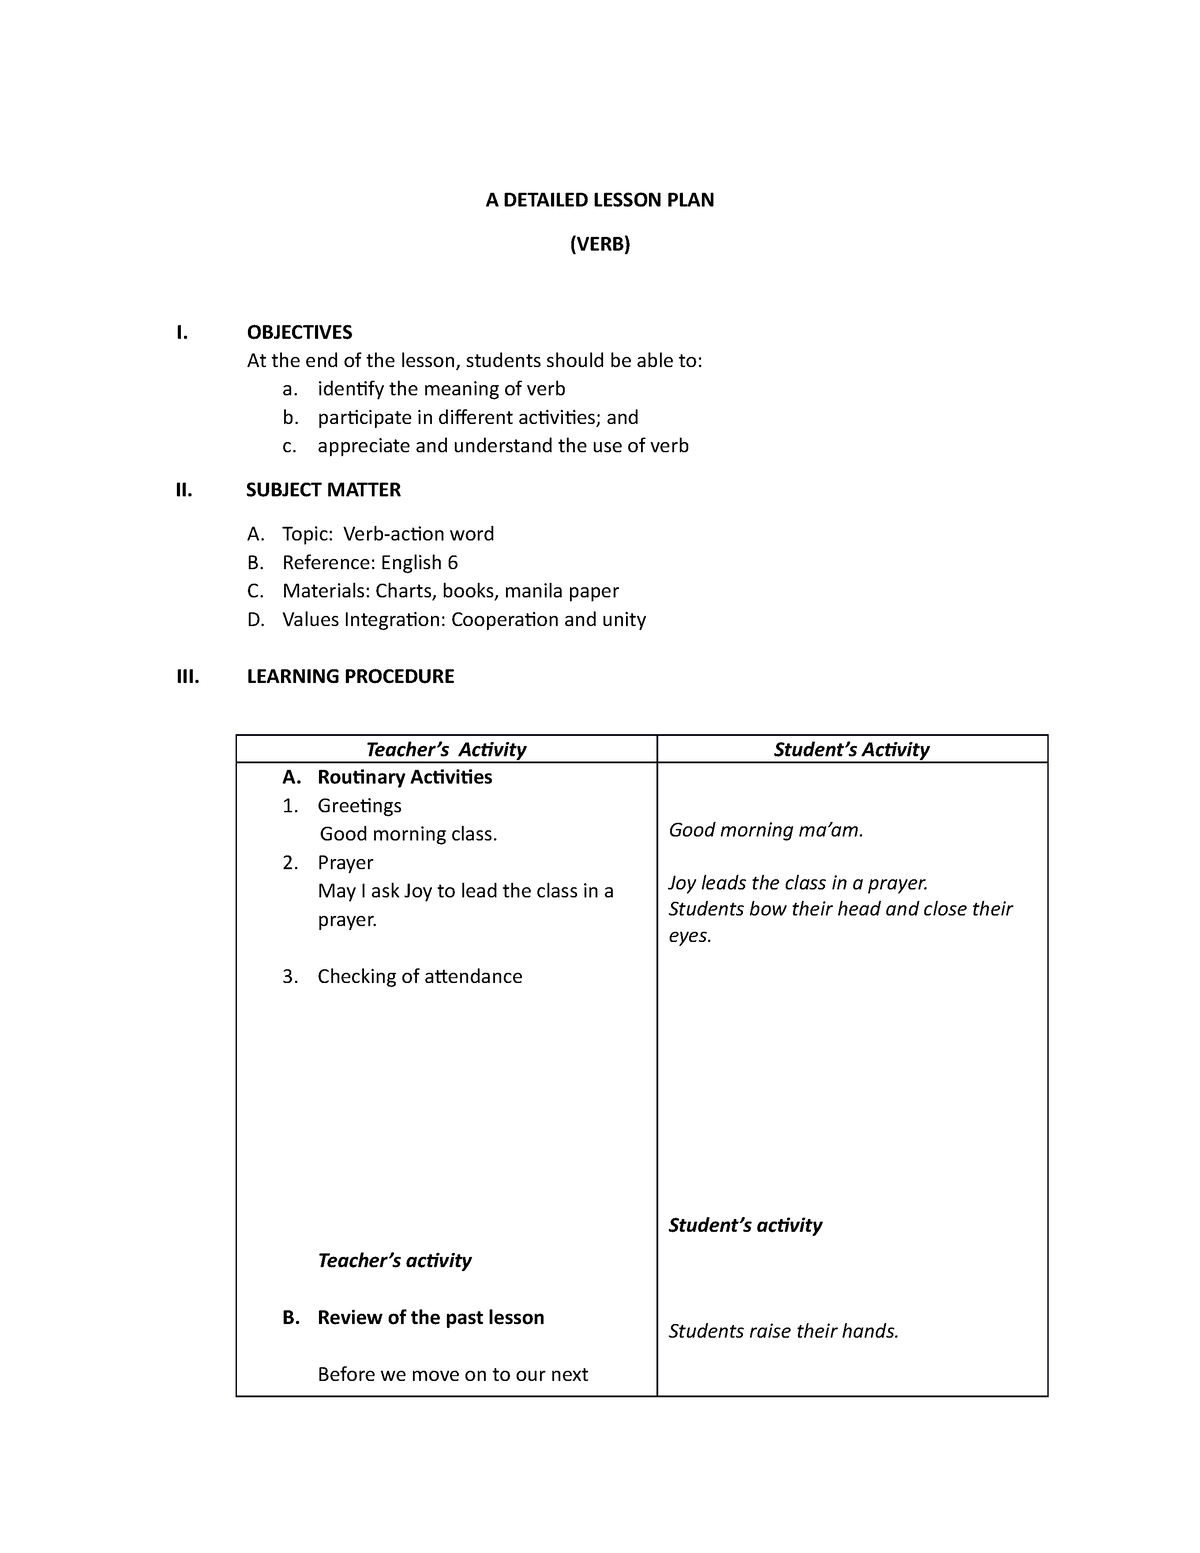 detailed-lesson-plan-a-detailed-lesson-plan-verb-i-objectives-at